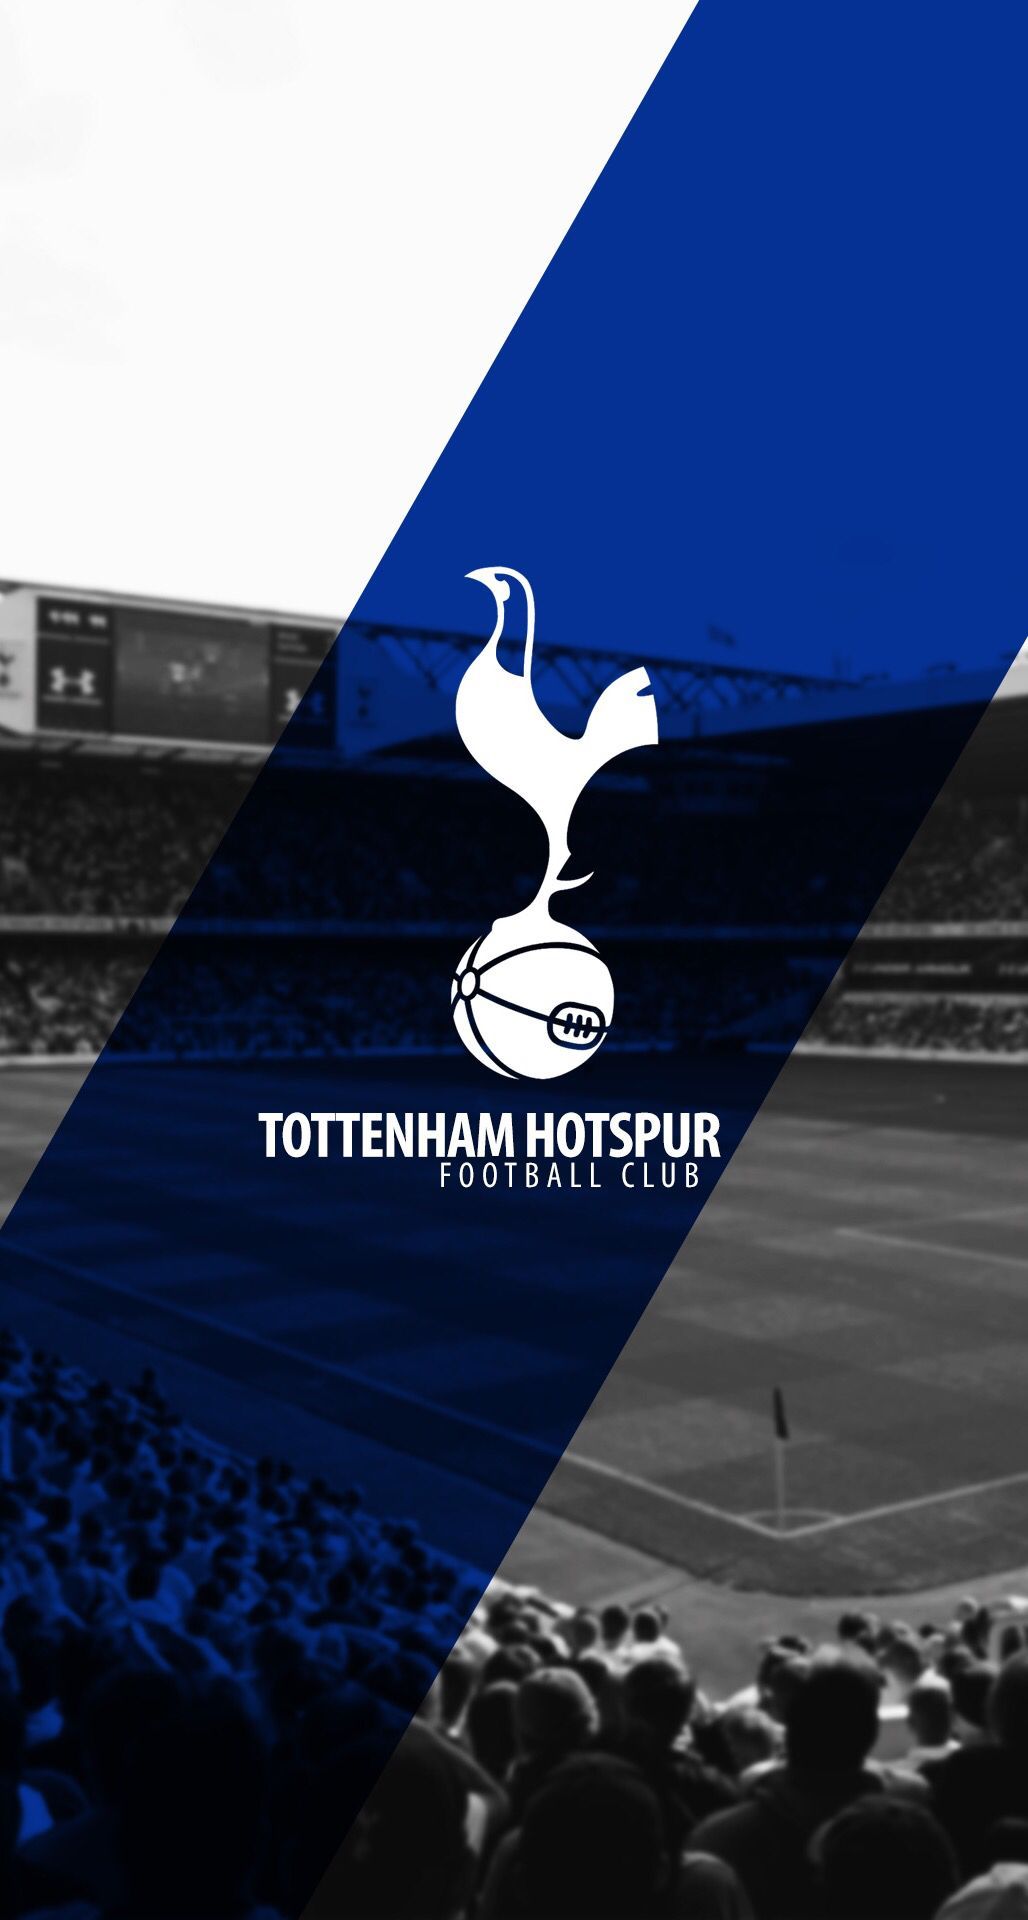 Tottenham Hotspur Football Club. Tottenham hotspur, Tottenham